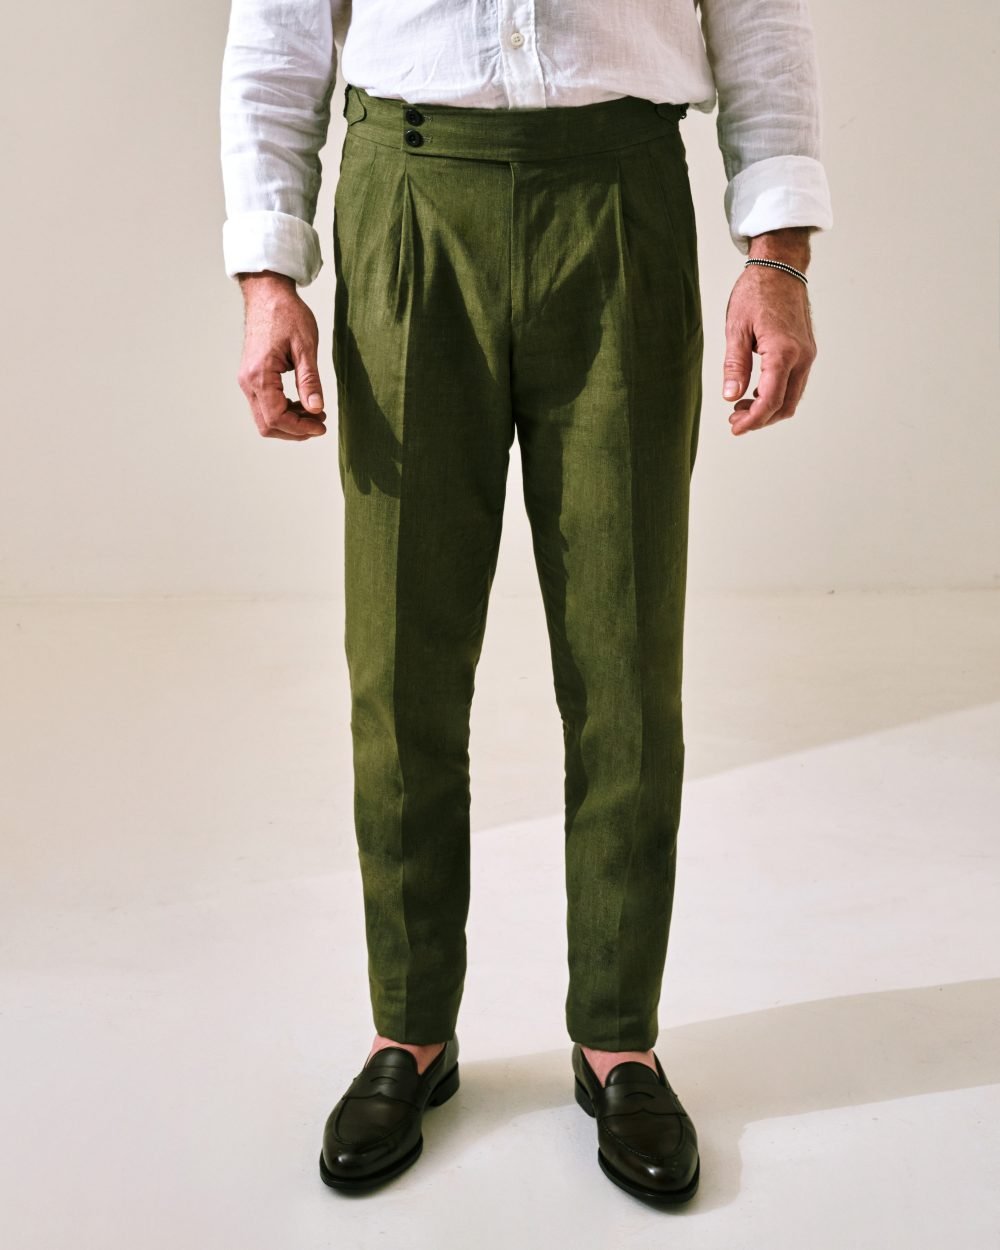 S4 Two Pleats Trousers / Linen & cotton